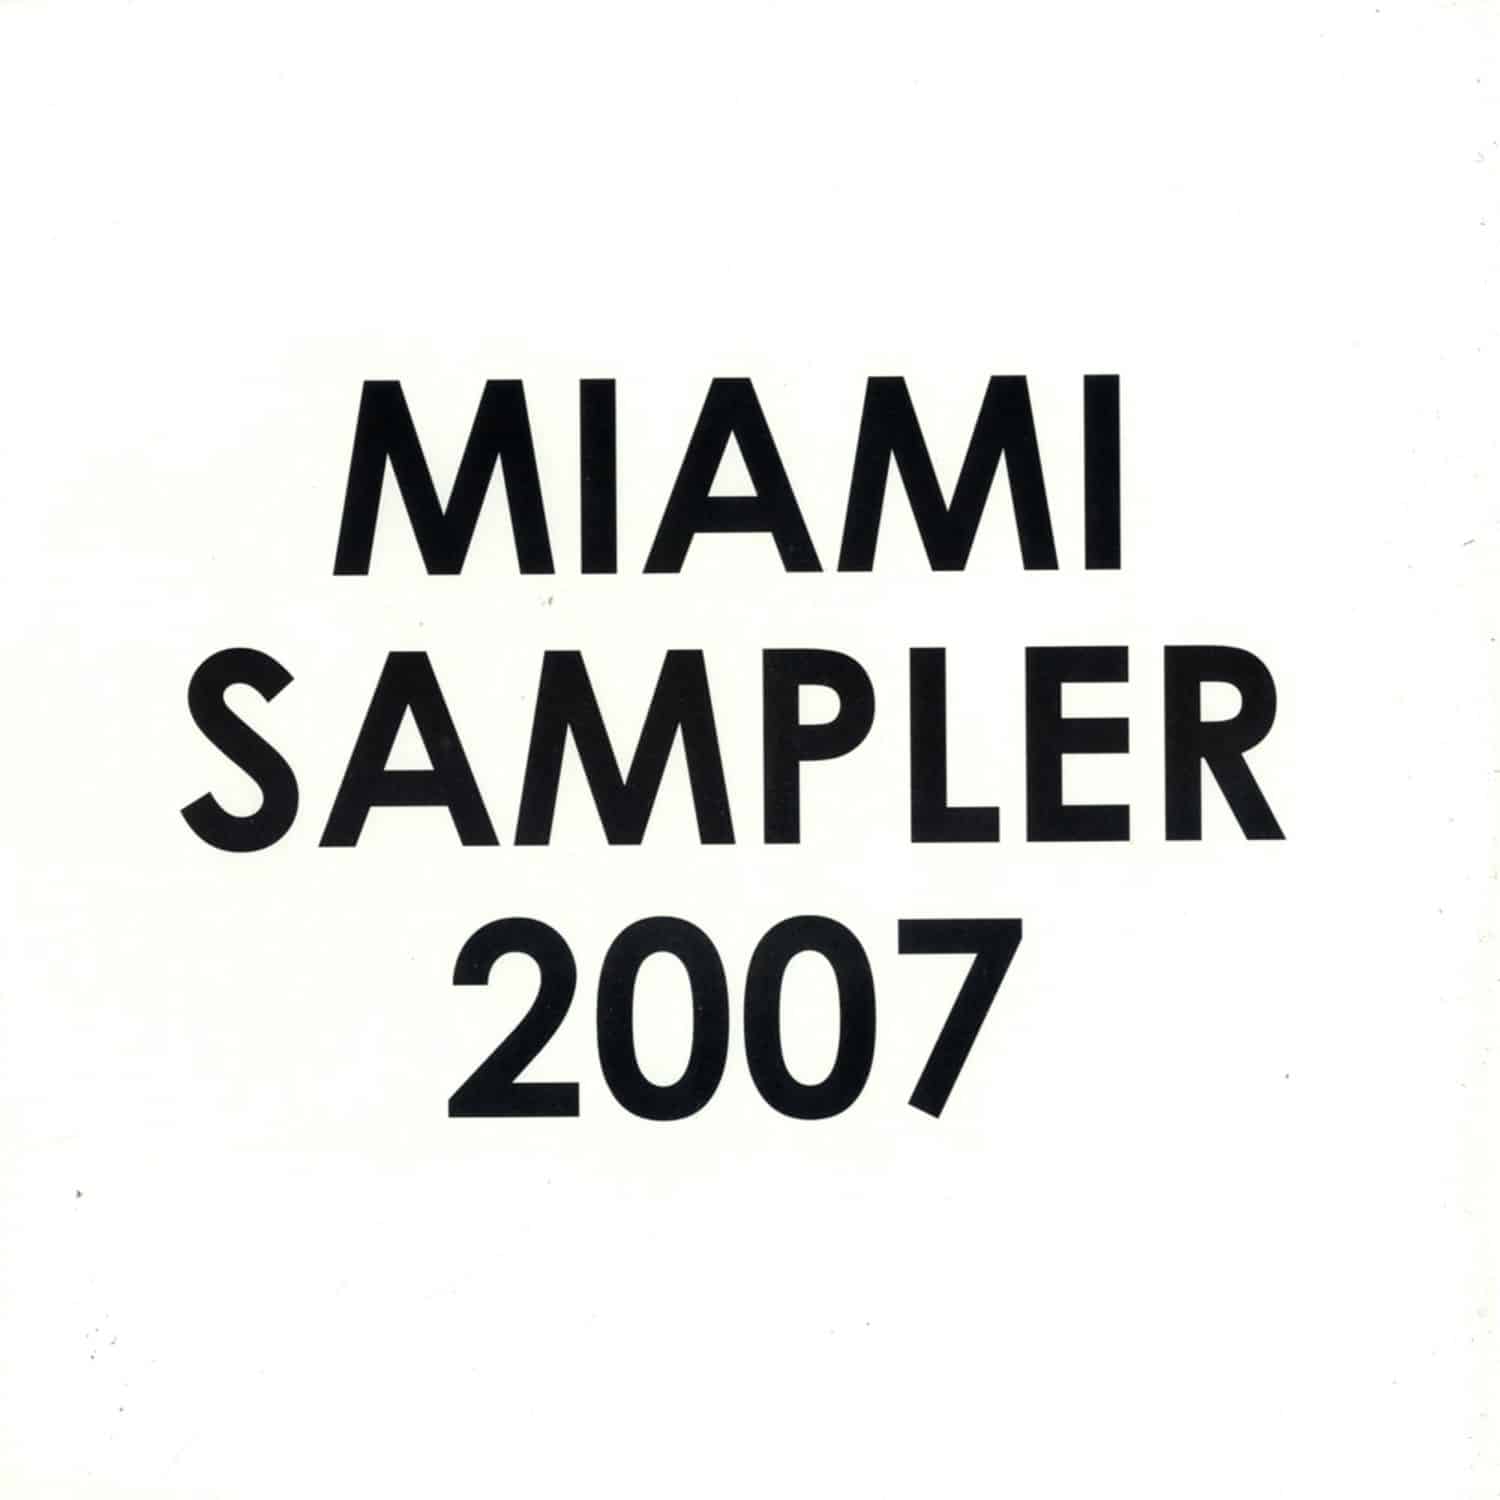 Hoxton Whores - MIAMI SAMPLER 2007